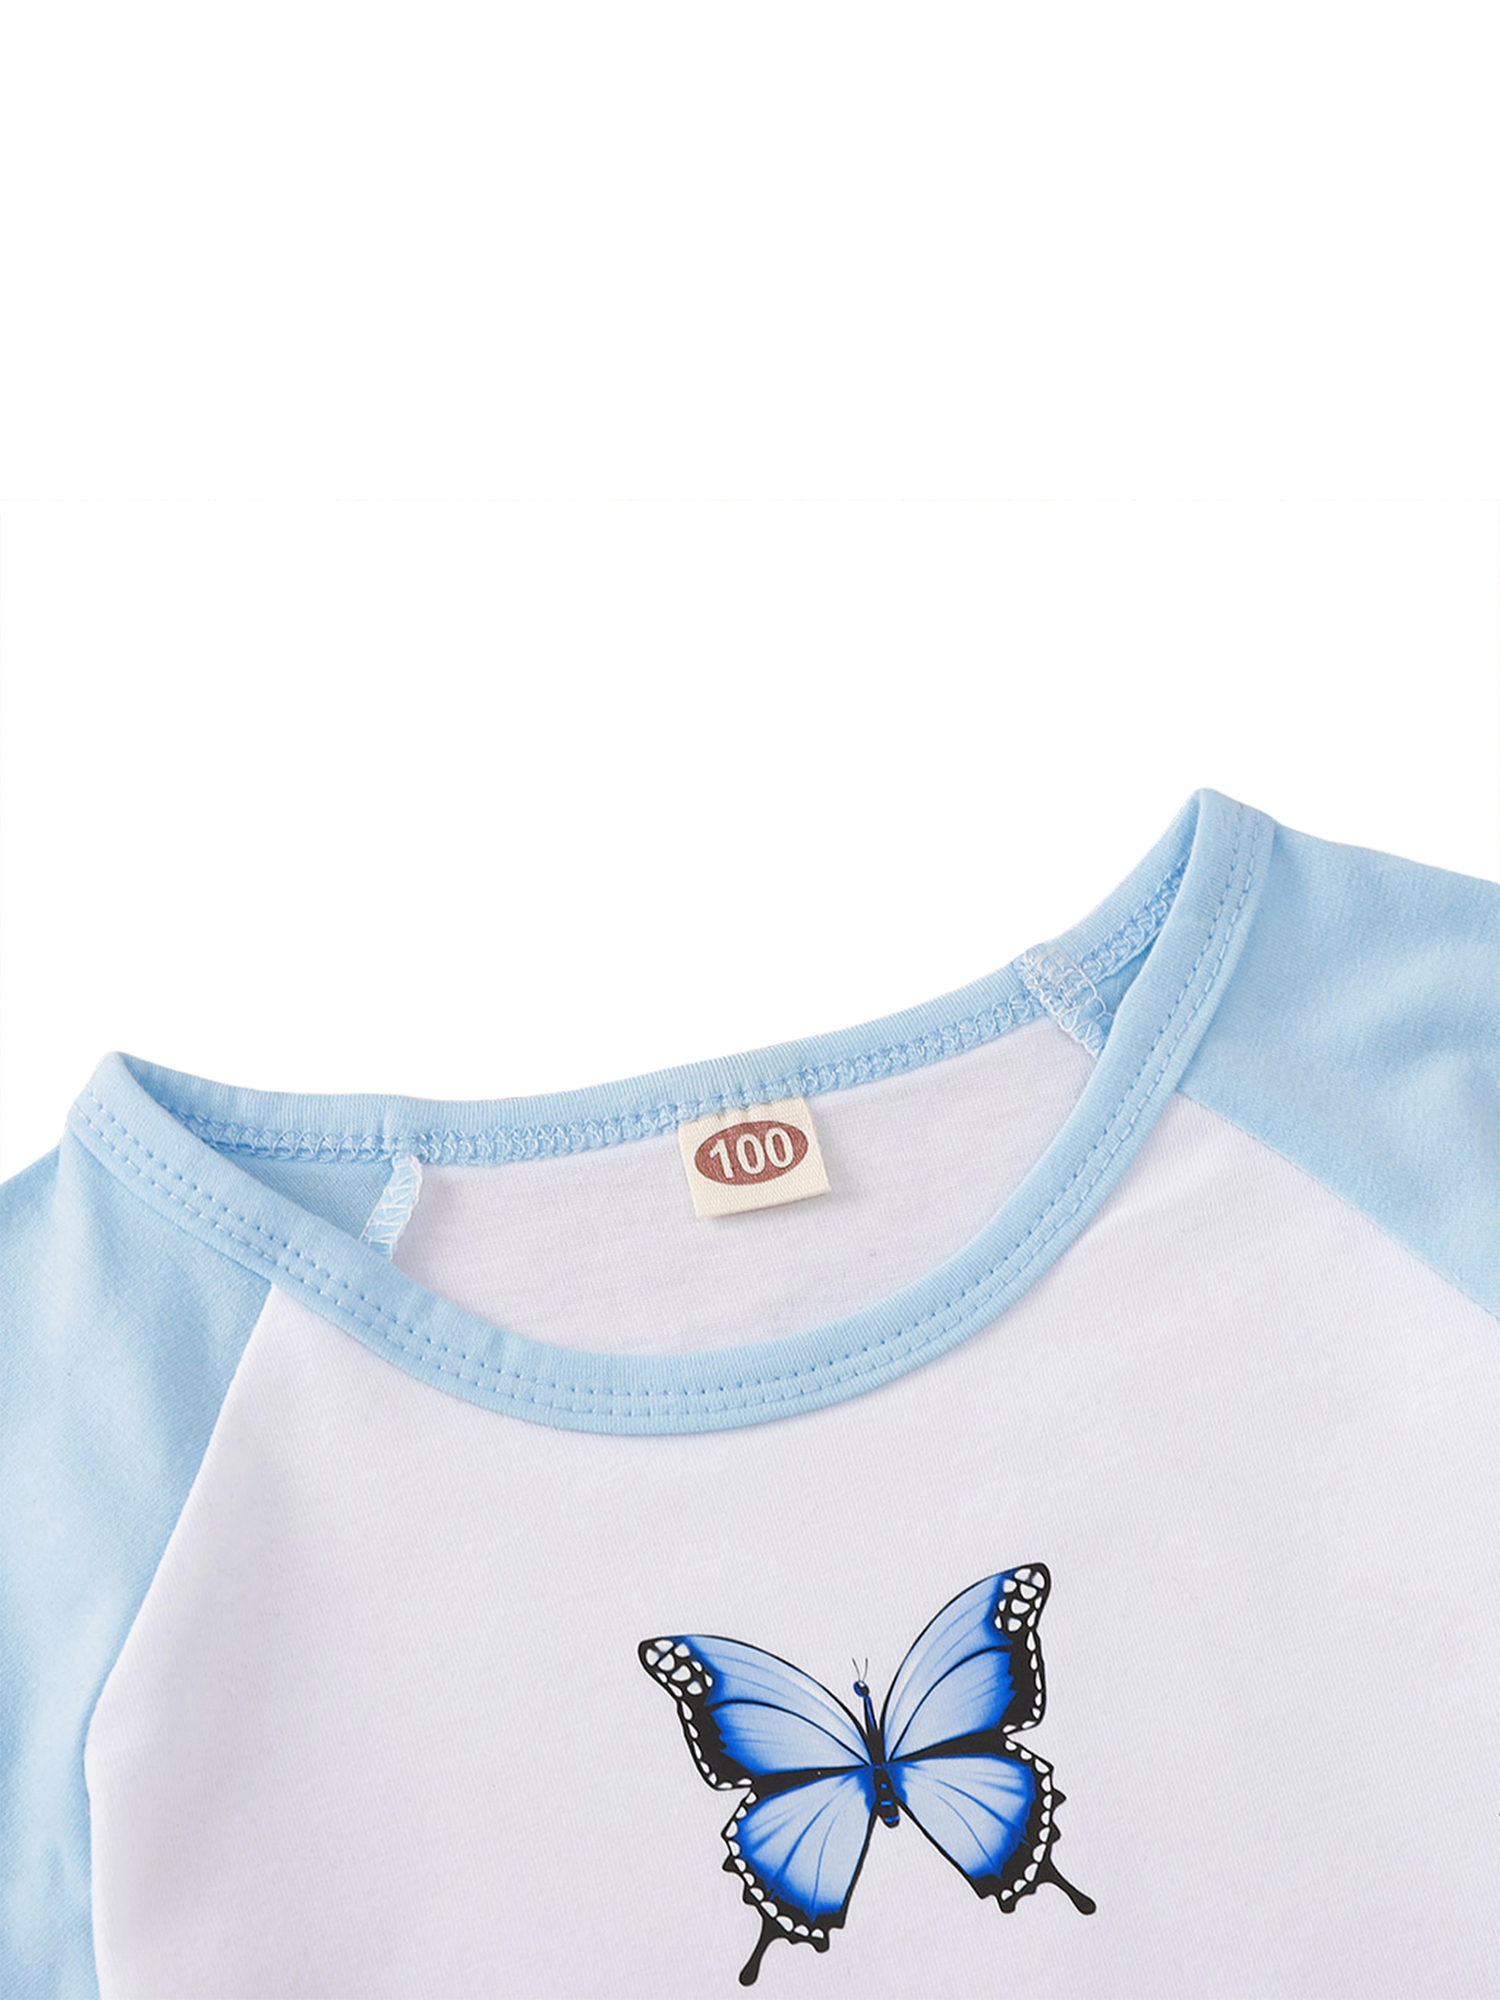 hirigin Kids Girls 2-piece Outfit Set Butterfly Print T-shirt+Skirt Set - image 5 of 9